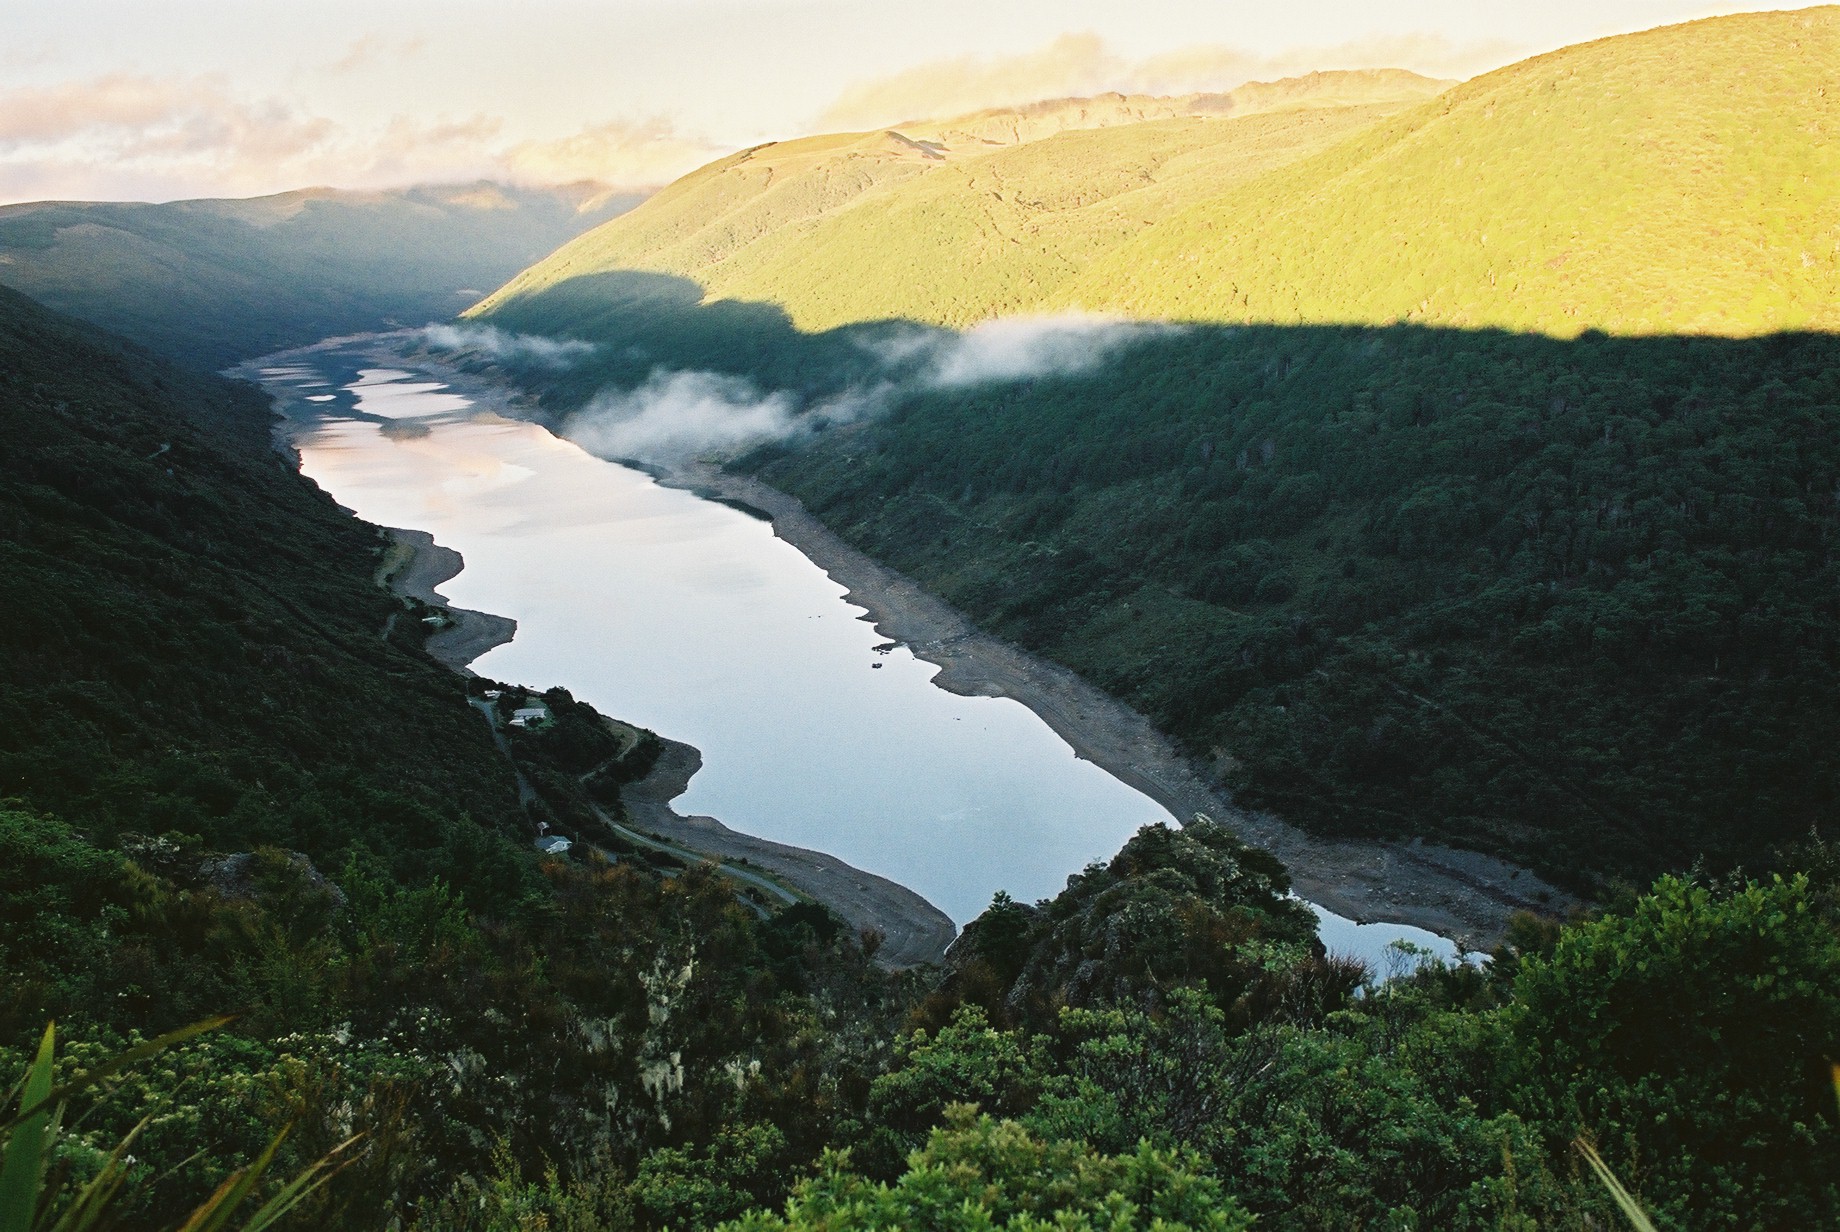 fotka / image Kahurangi National Park, color negatives, New Zealand